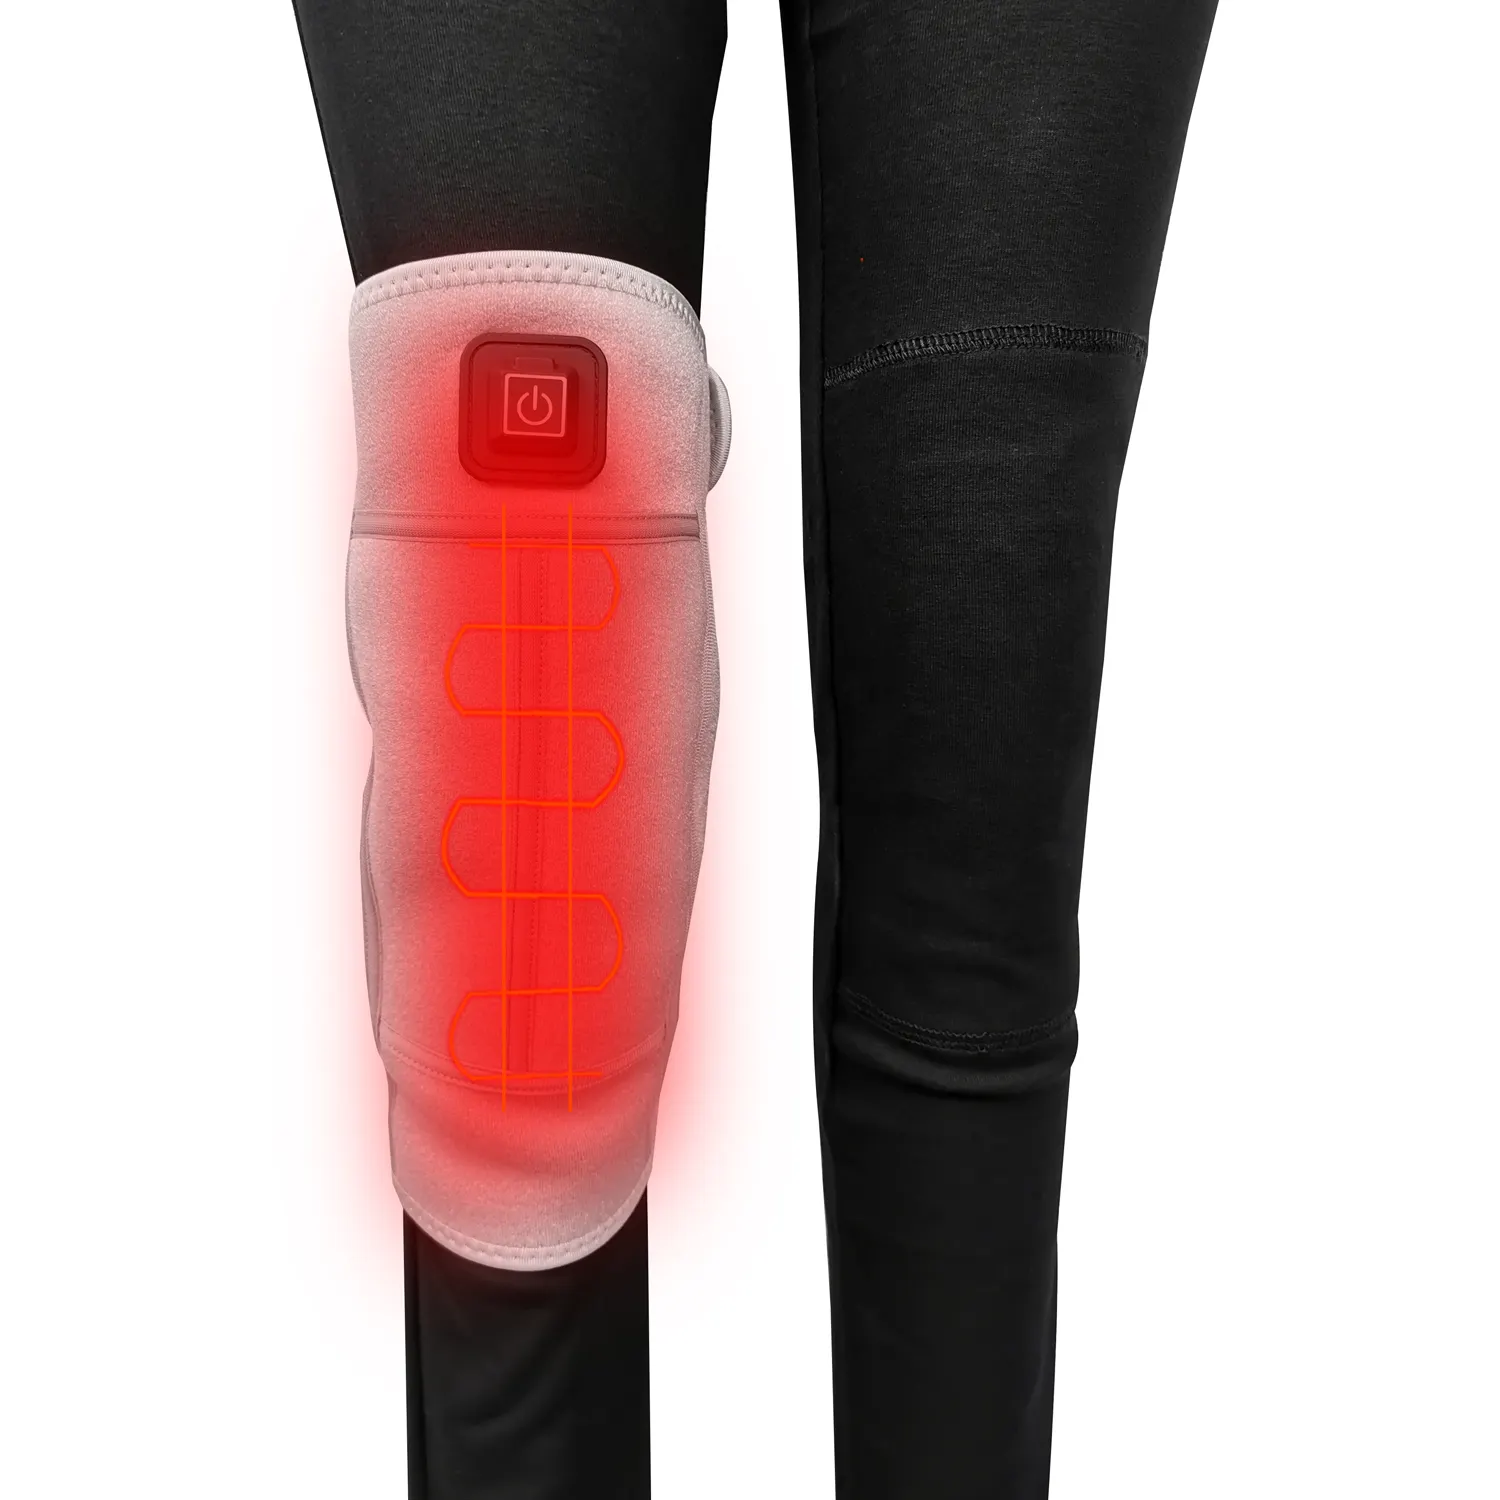 Joelheira magnética com turmalina, joelheira de alívio de dor infravermelha, para dor de artrite e joelho